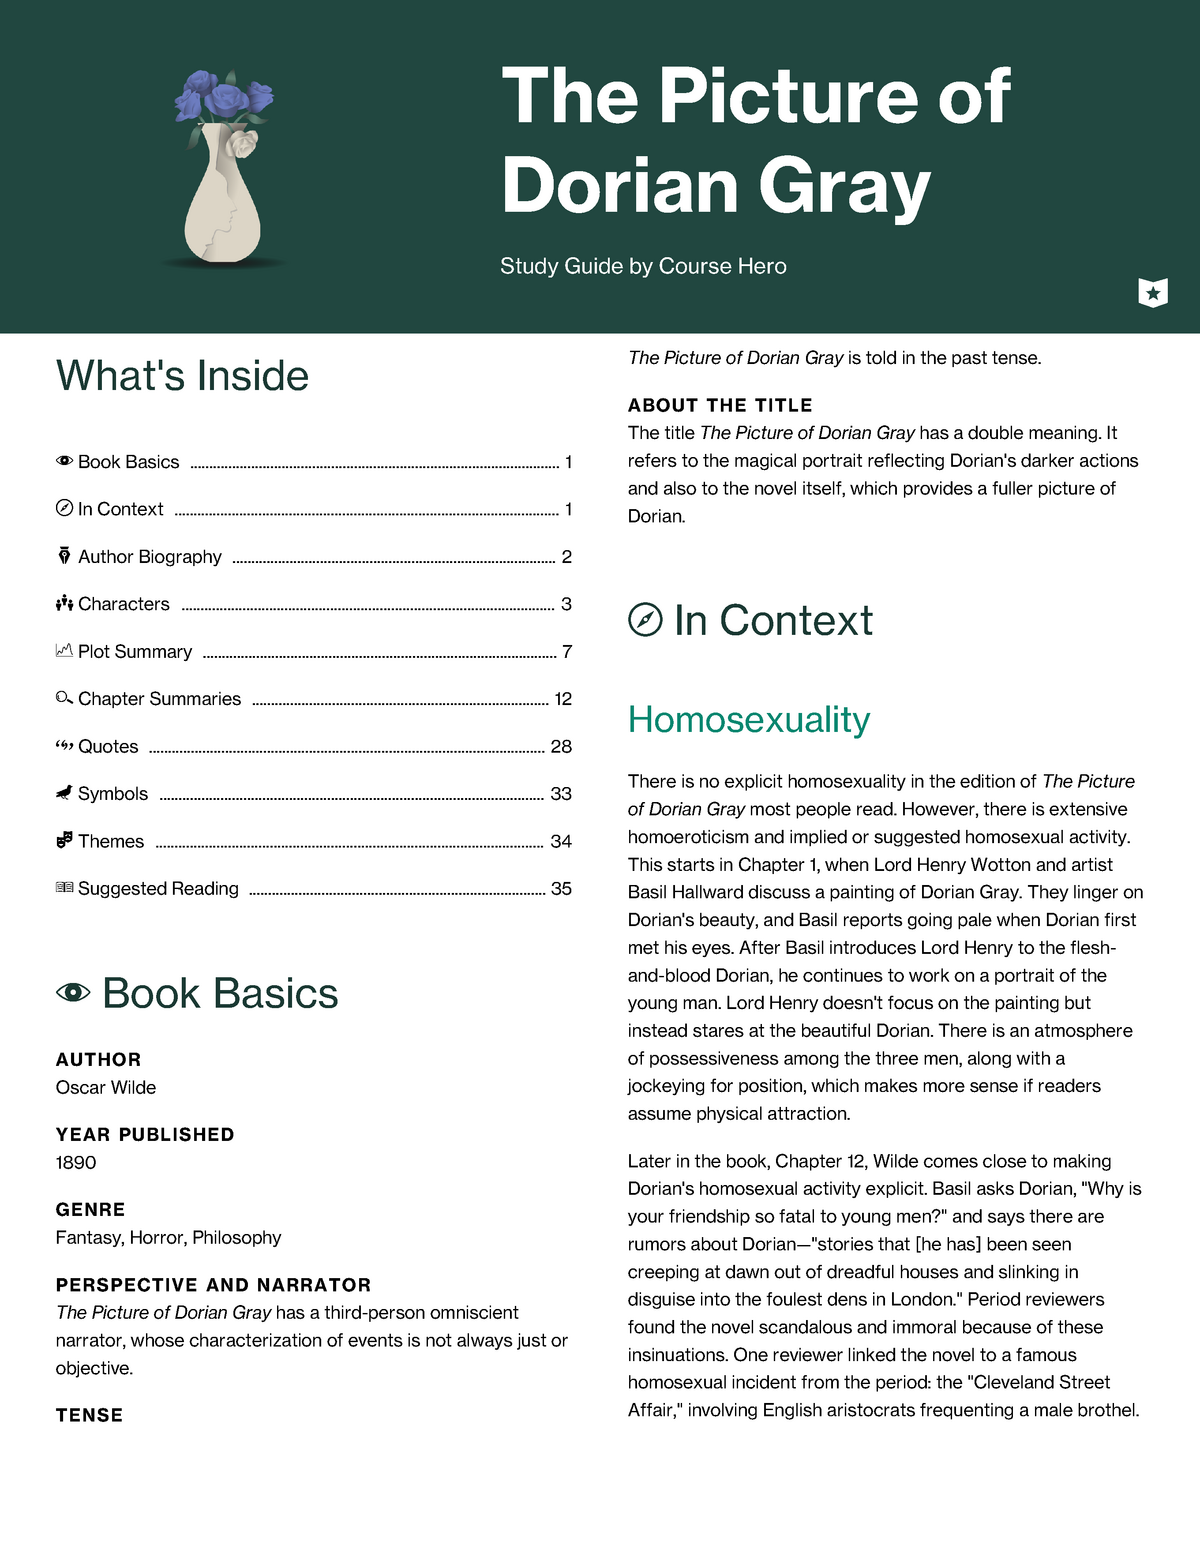 dorian gray essay topics